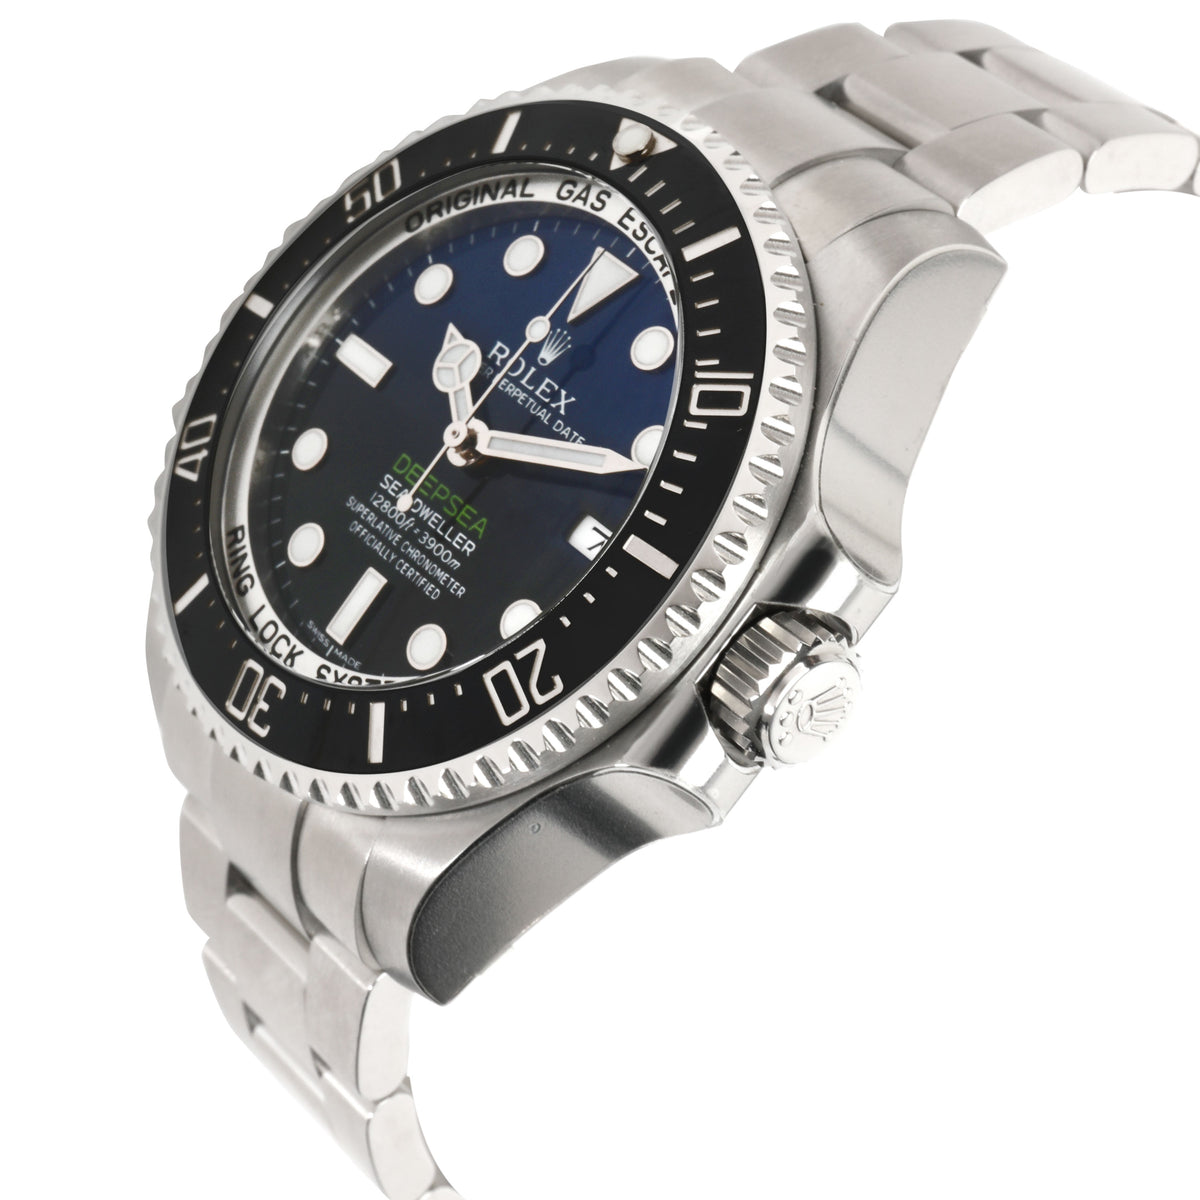 Rolex Sea-Dweller Deepsea 116660 Men's Watch in  Stainless Steel